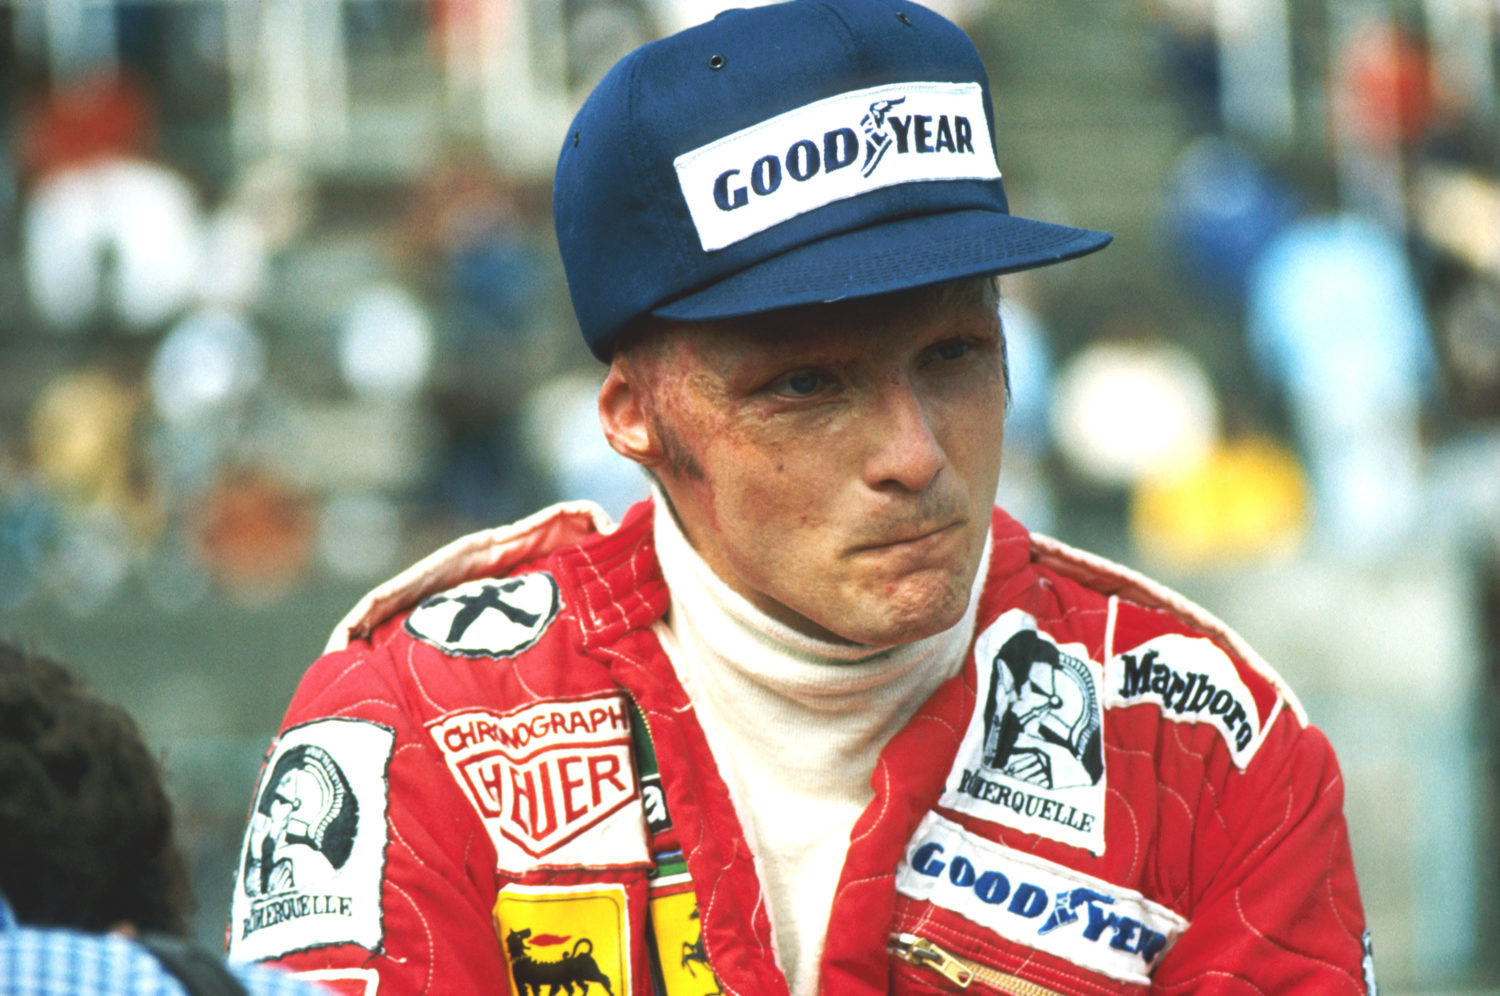 Niki Lauda maakt een heldhaftige comeback, slechts 6 weken na zijn zware crash verschijnt hij alweer aan de start 